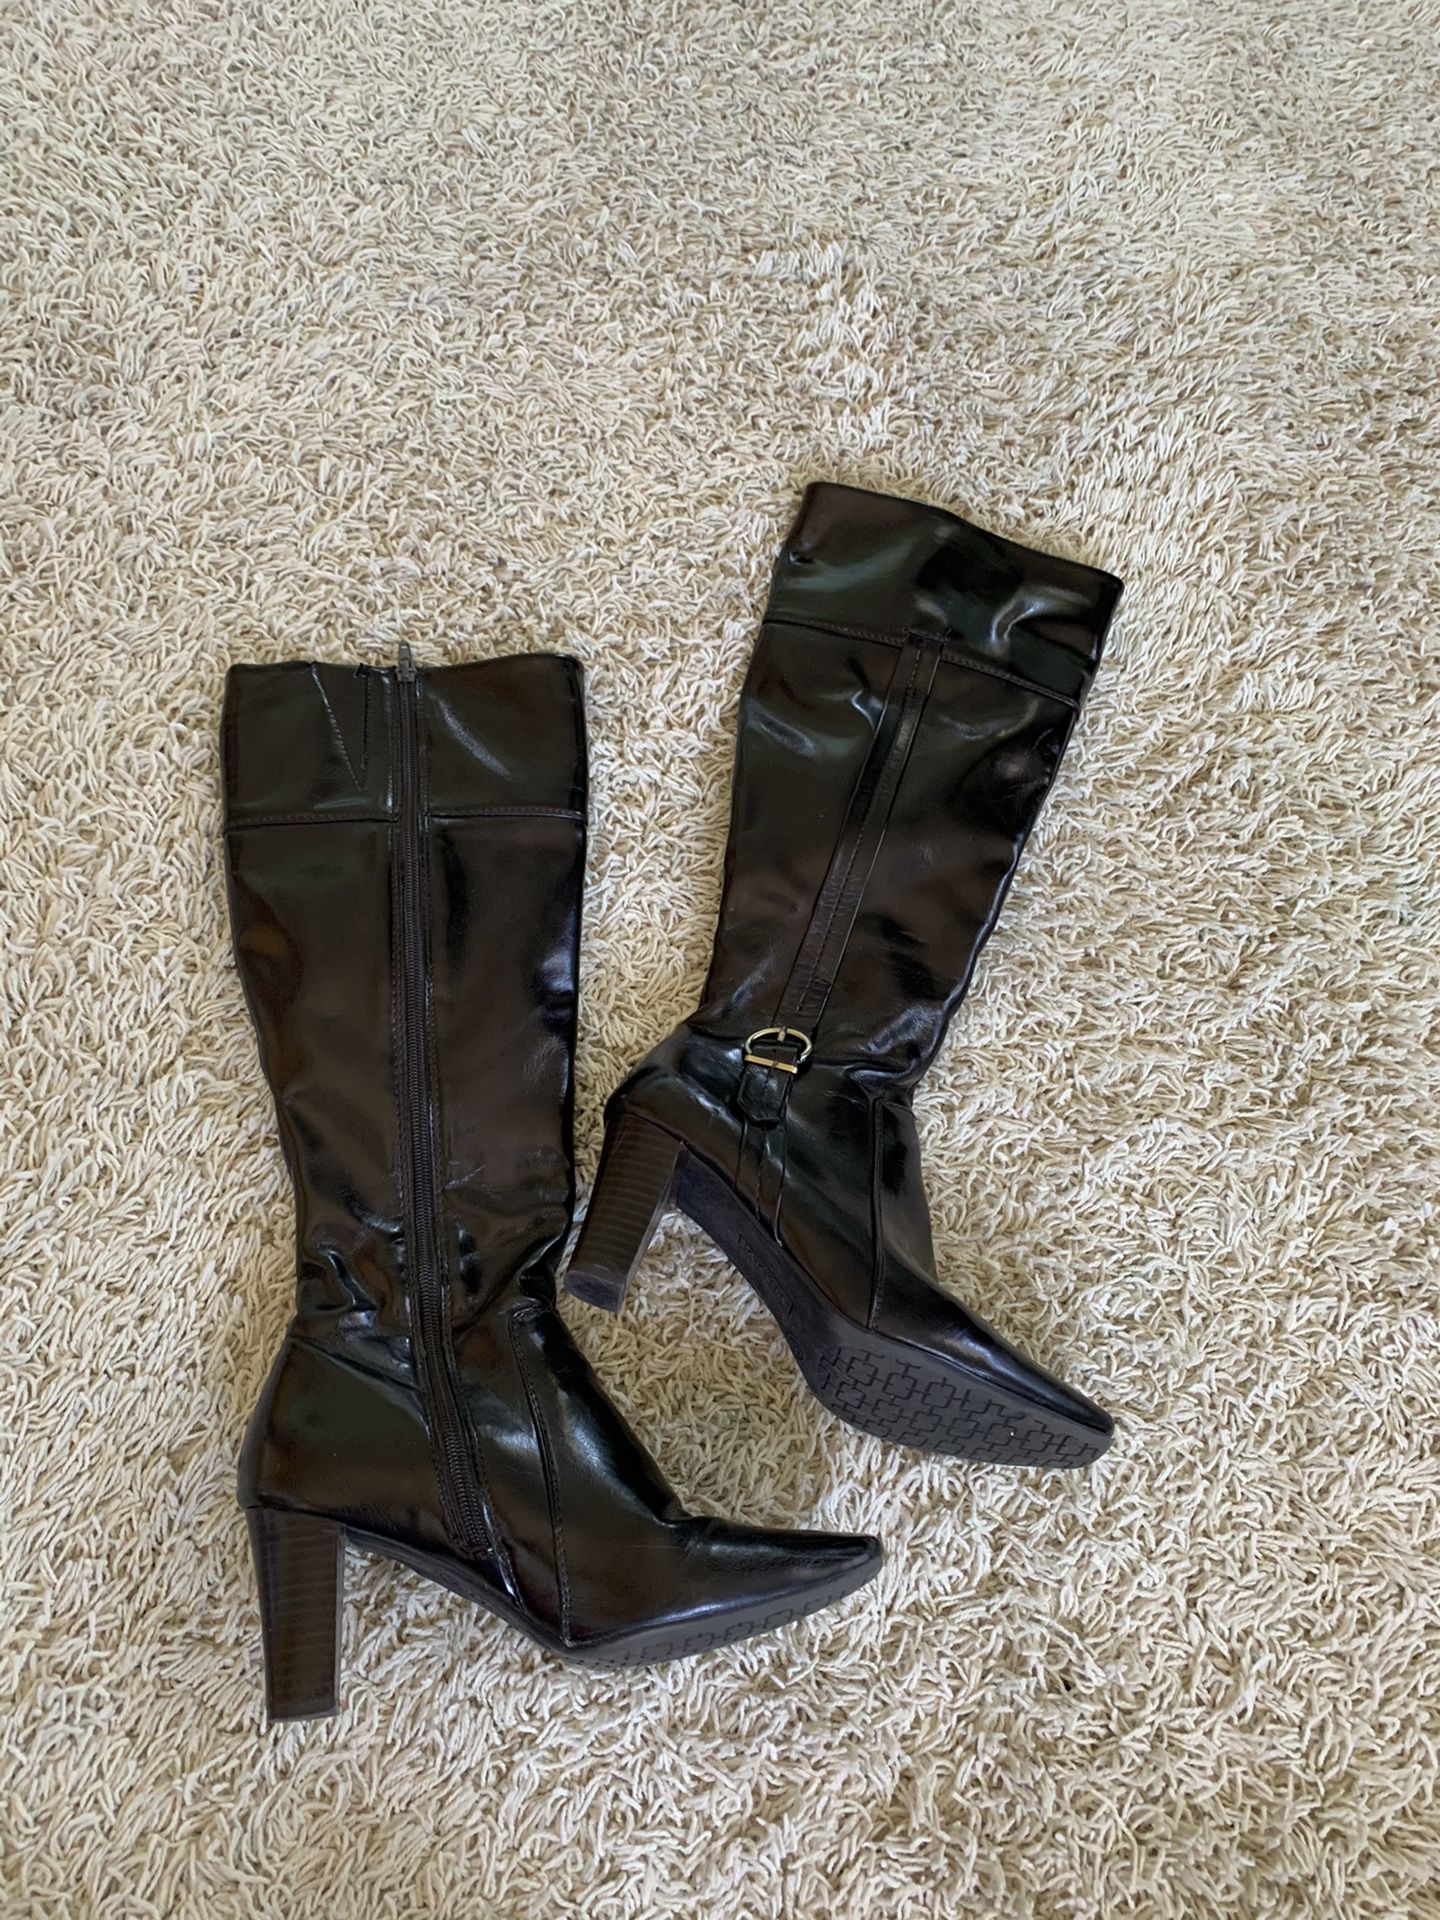 Black boot heels